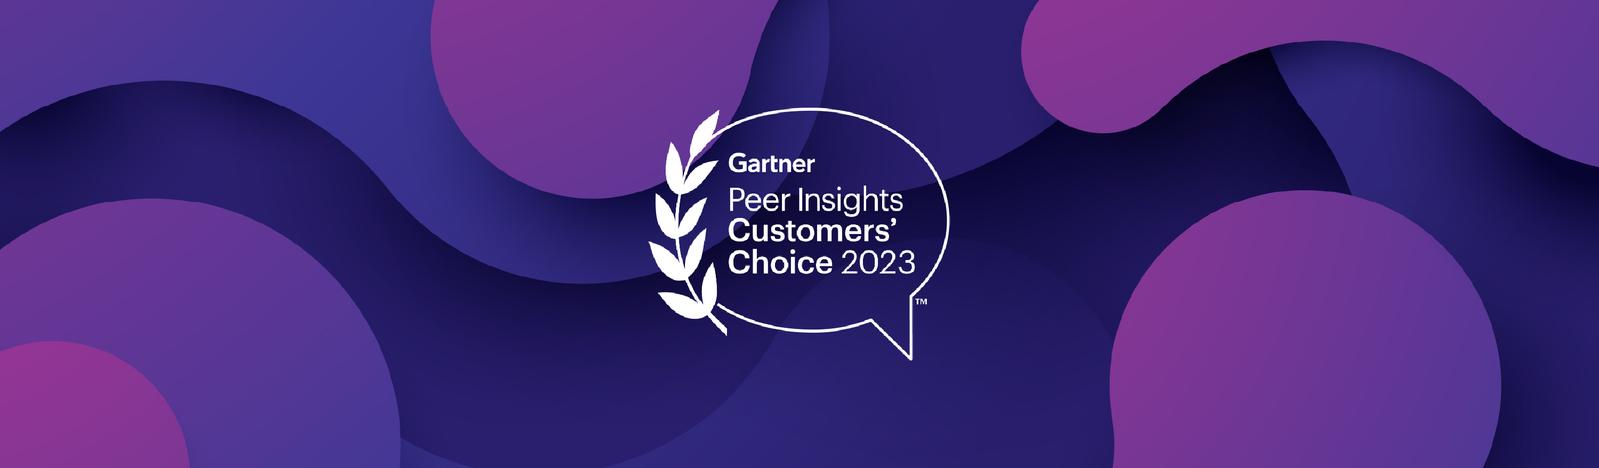 gartner-peer-insights-customer-choice-2023